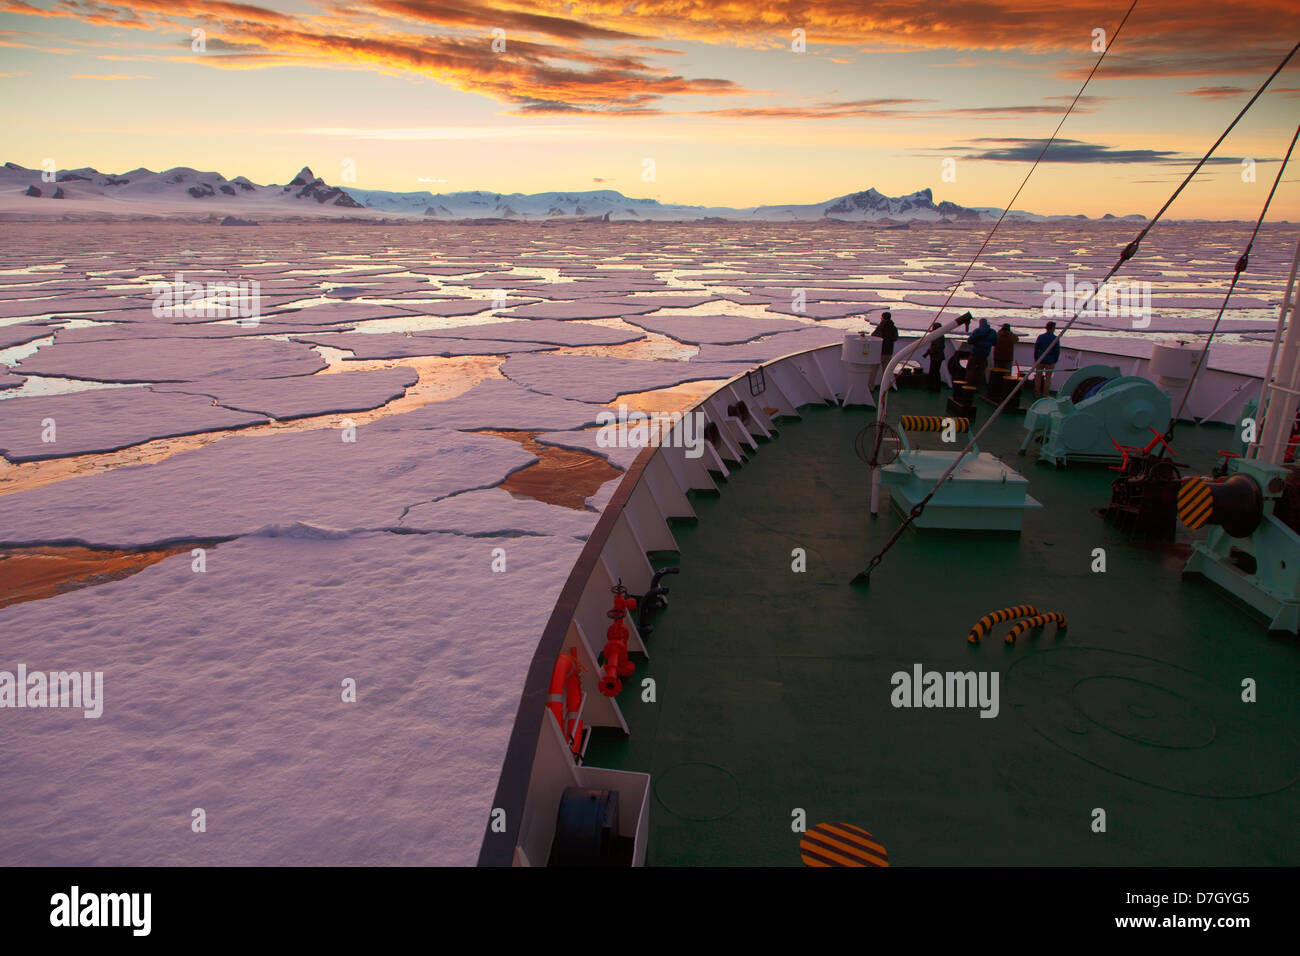 Icebreaker Ortelius Bewegung durch Eis bei Sonnenuntergang / Sonnenaufgang wie wir unterhalb des Polarkreises, Antarktis Reisen. Stockfoto